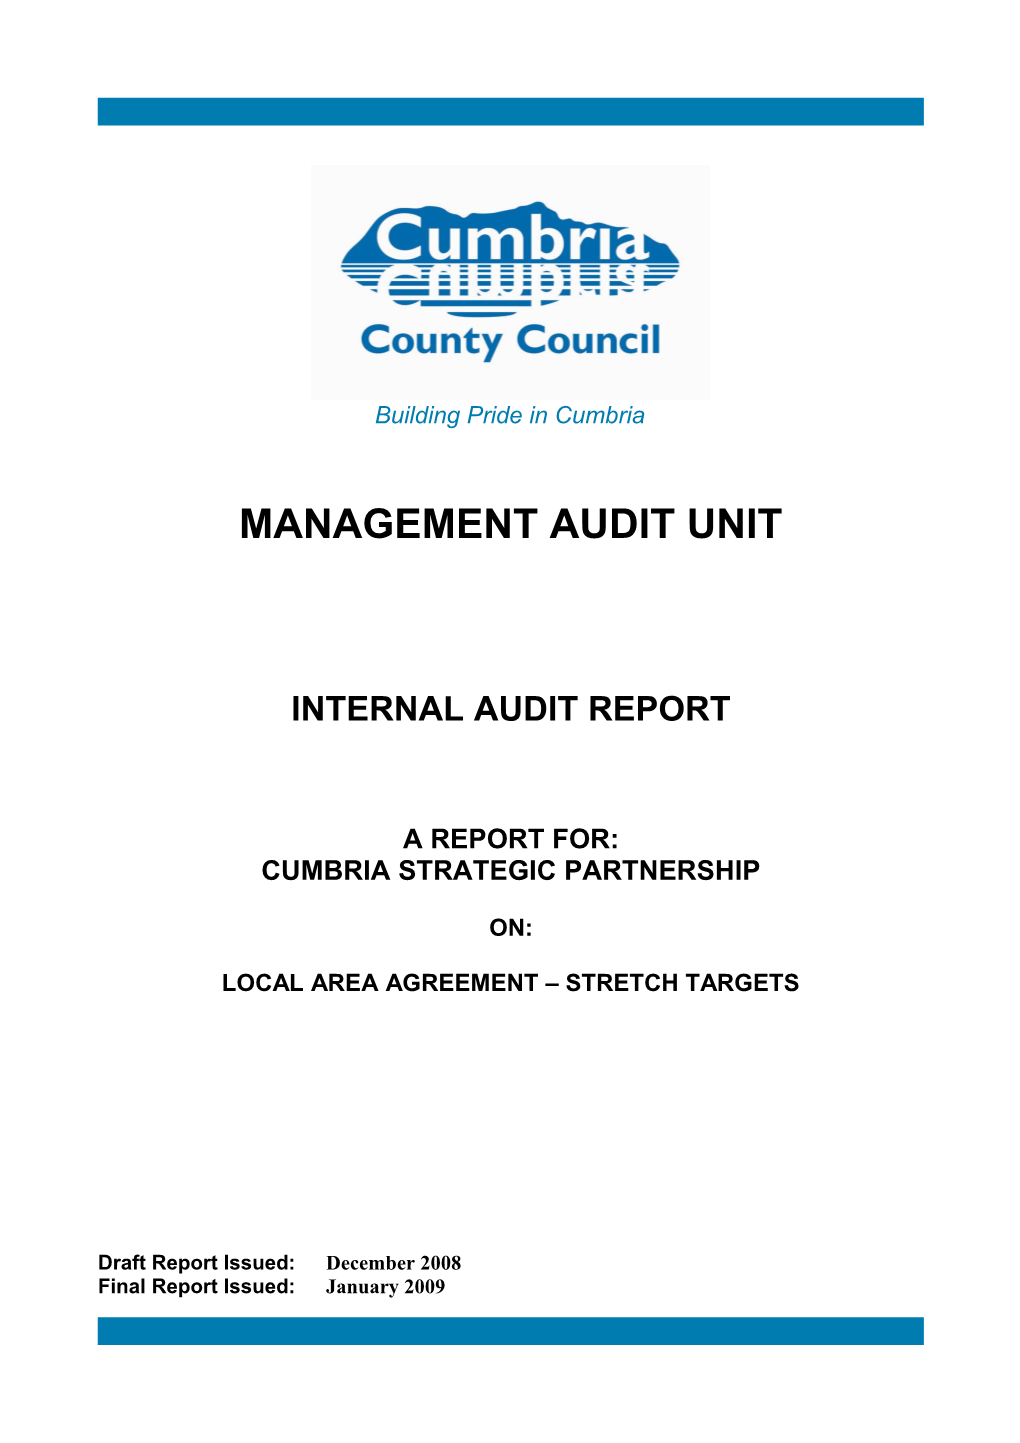 Management Audit Unit